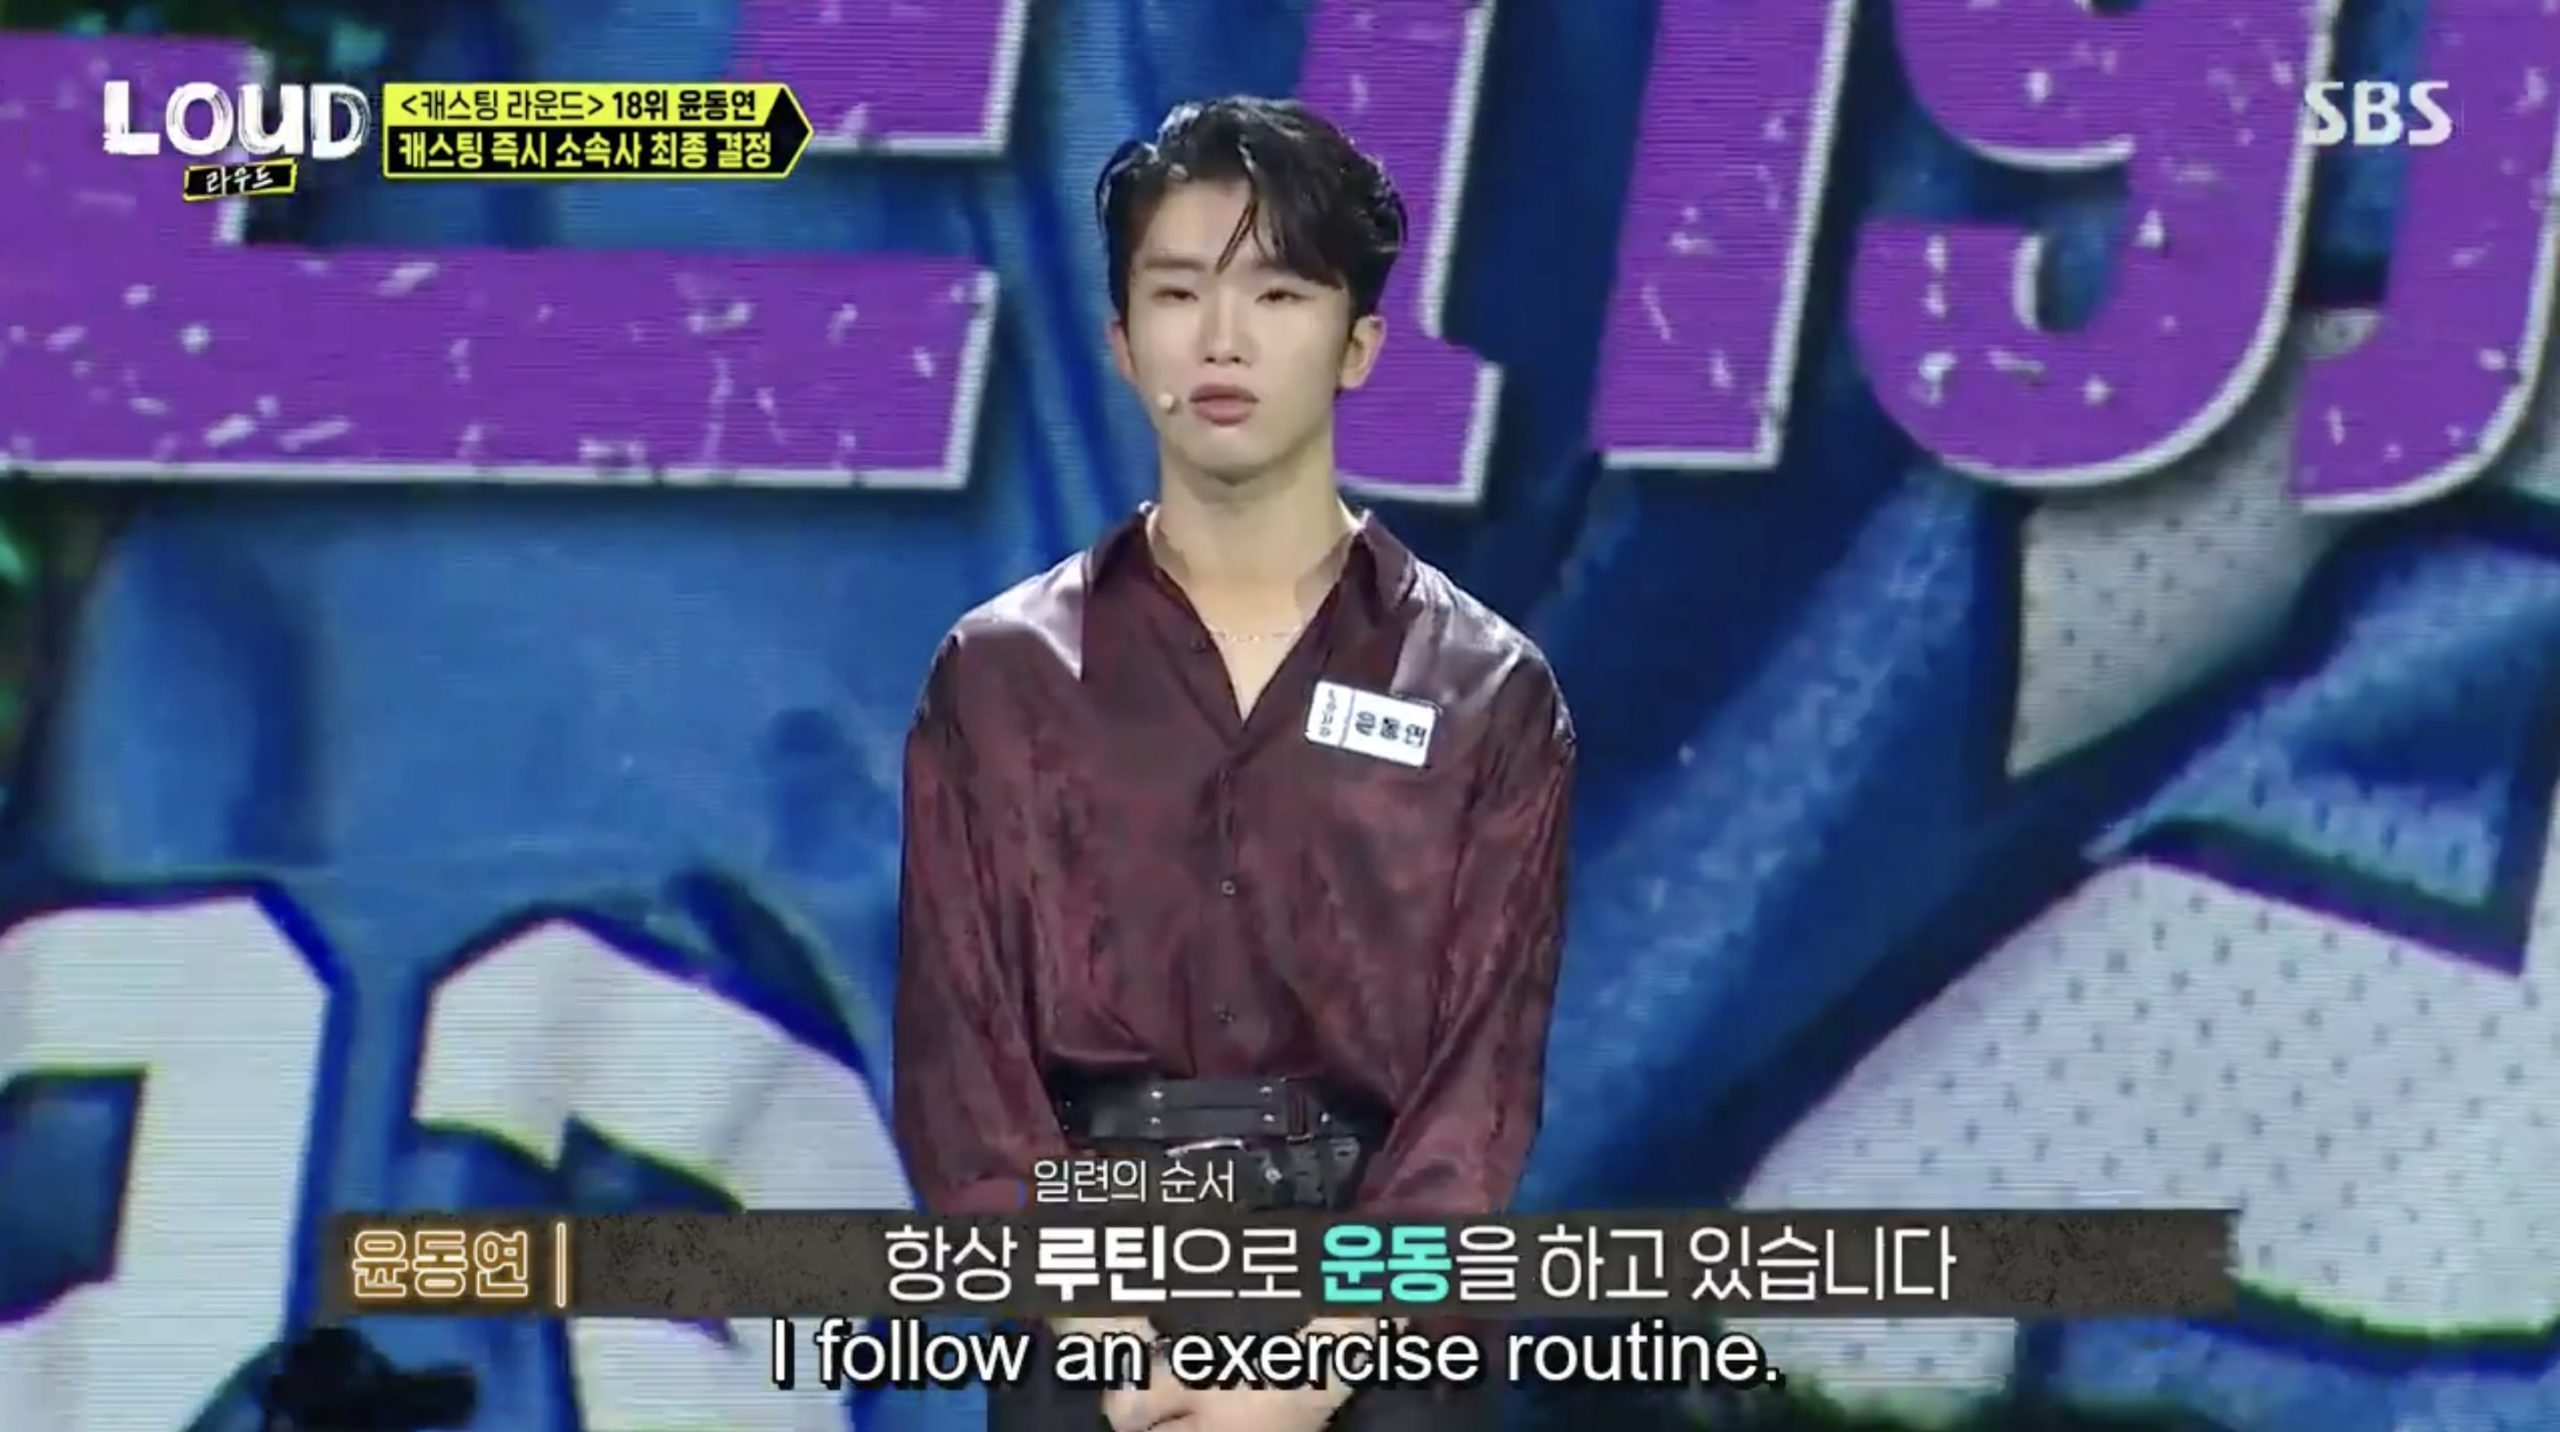 Youn said he exercises every day